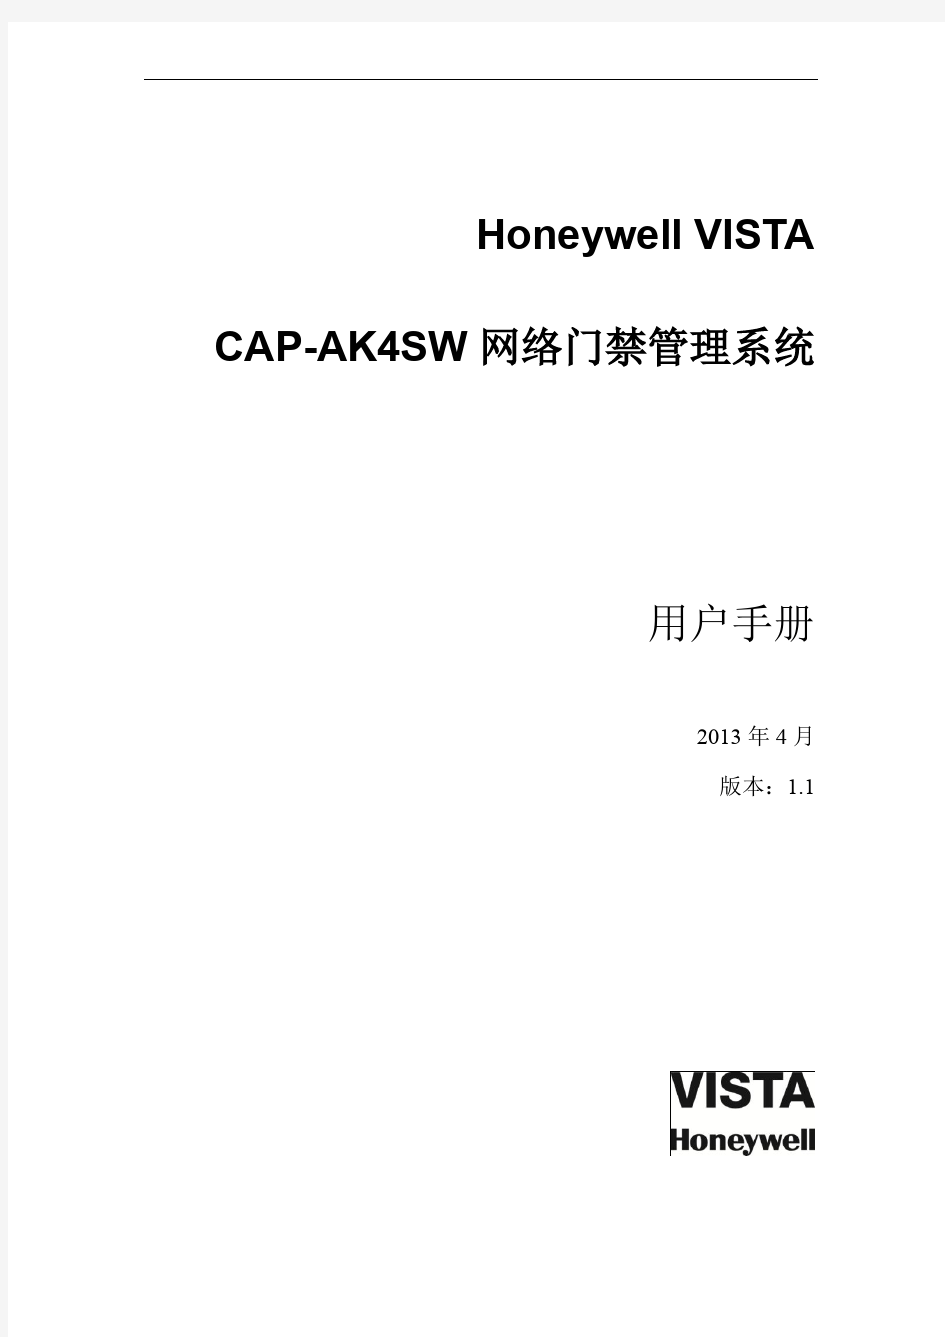 CAP-AK4SW (V1.0) 门禁管理系统 _ 用户使用手册_V1.1